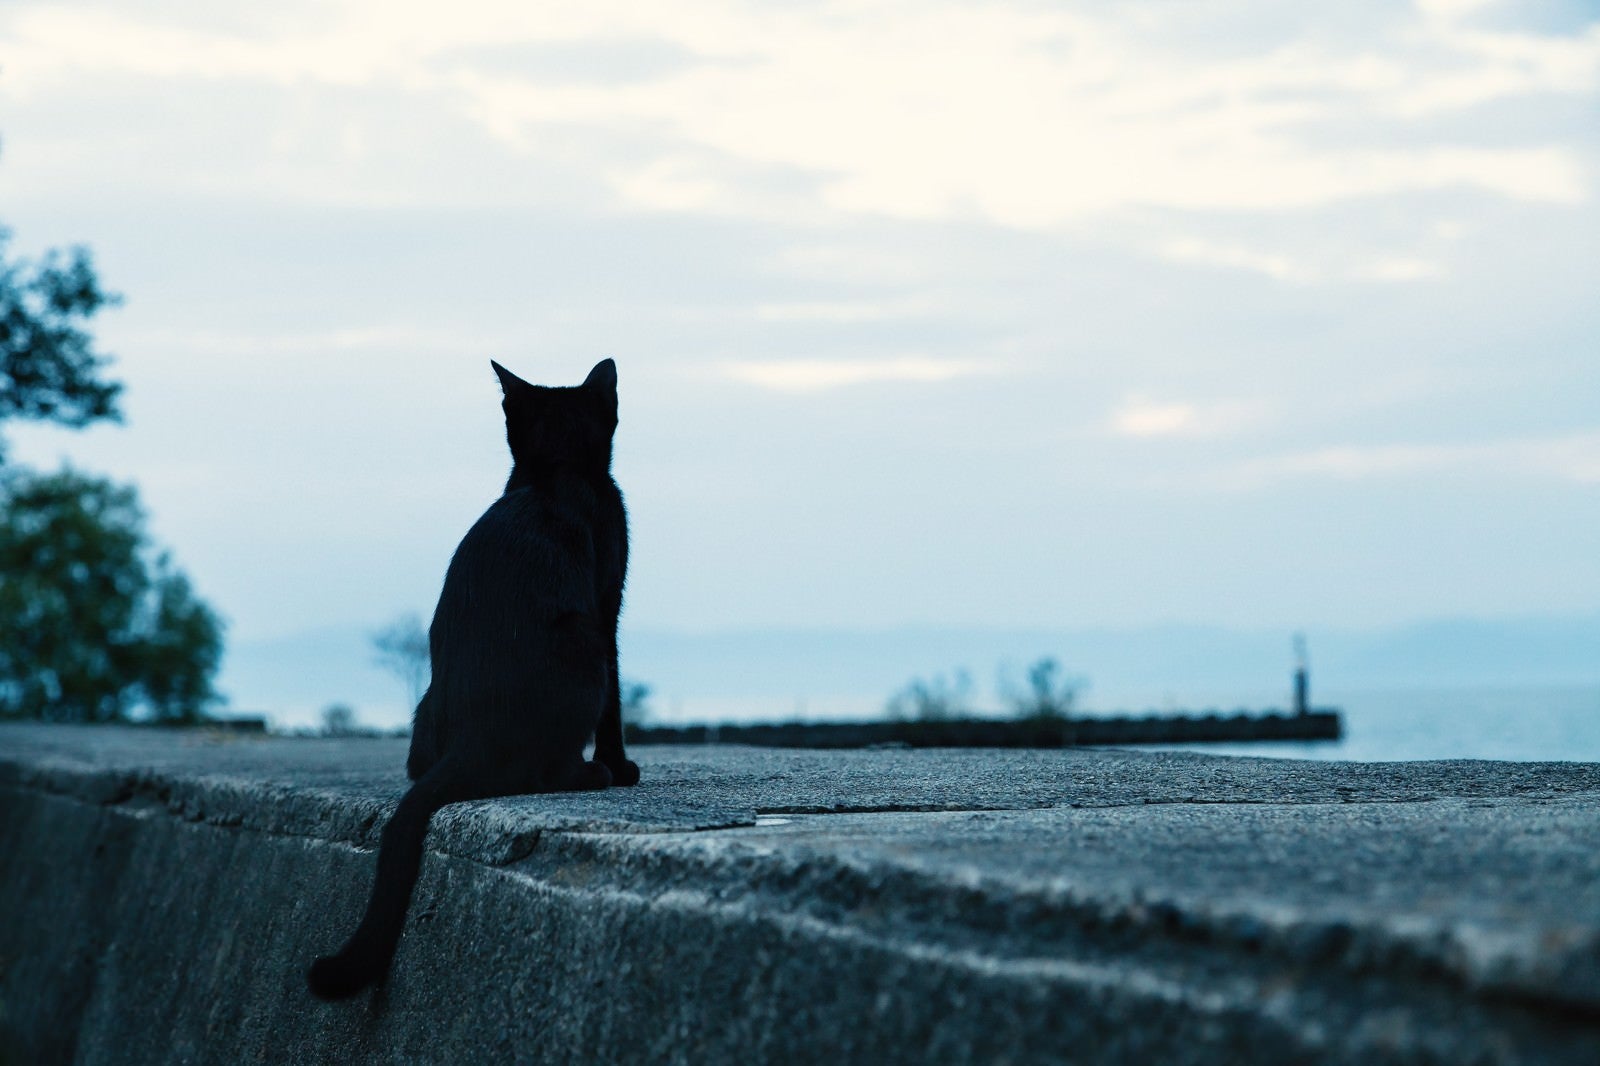 「埠頭から海を見る黒猫」の写真